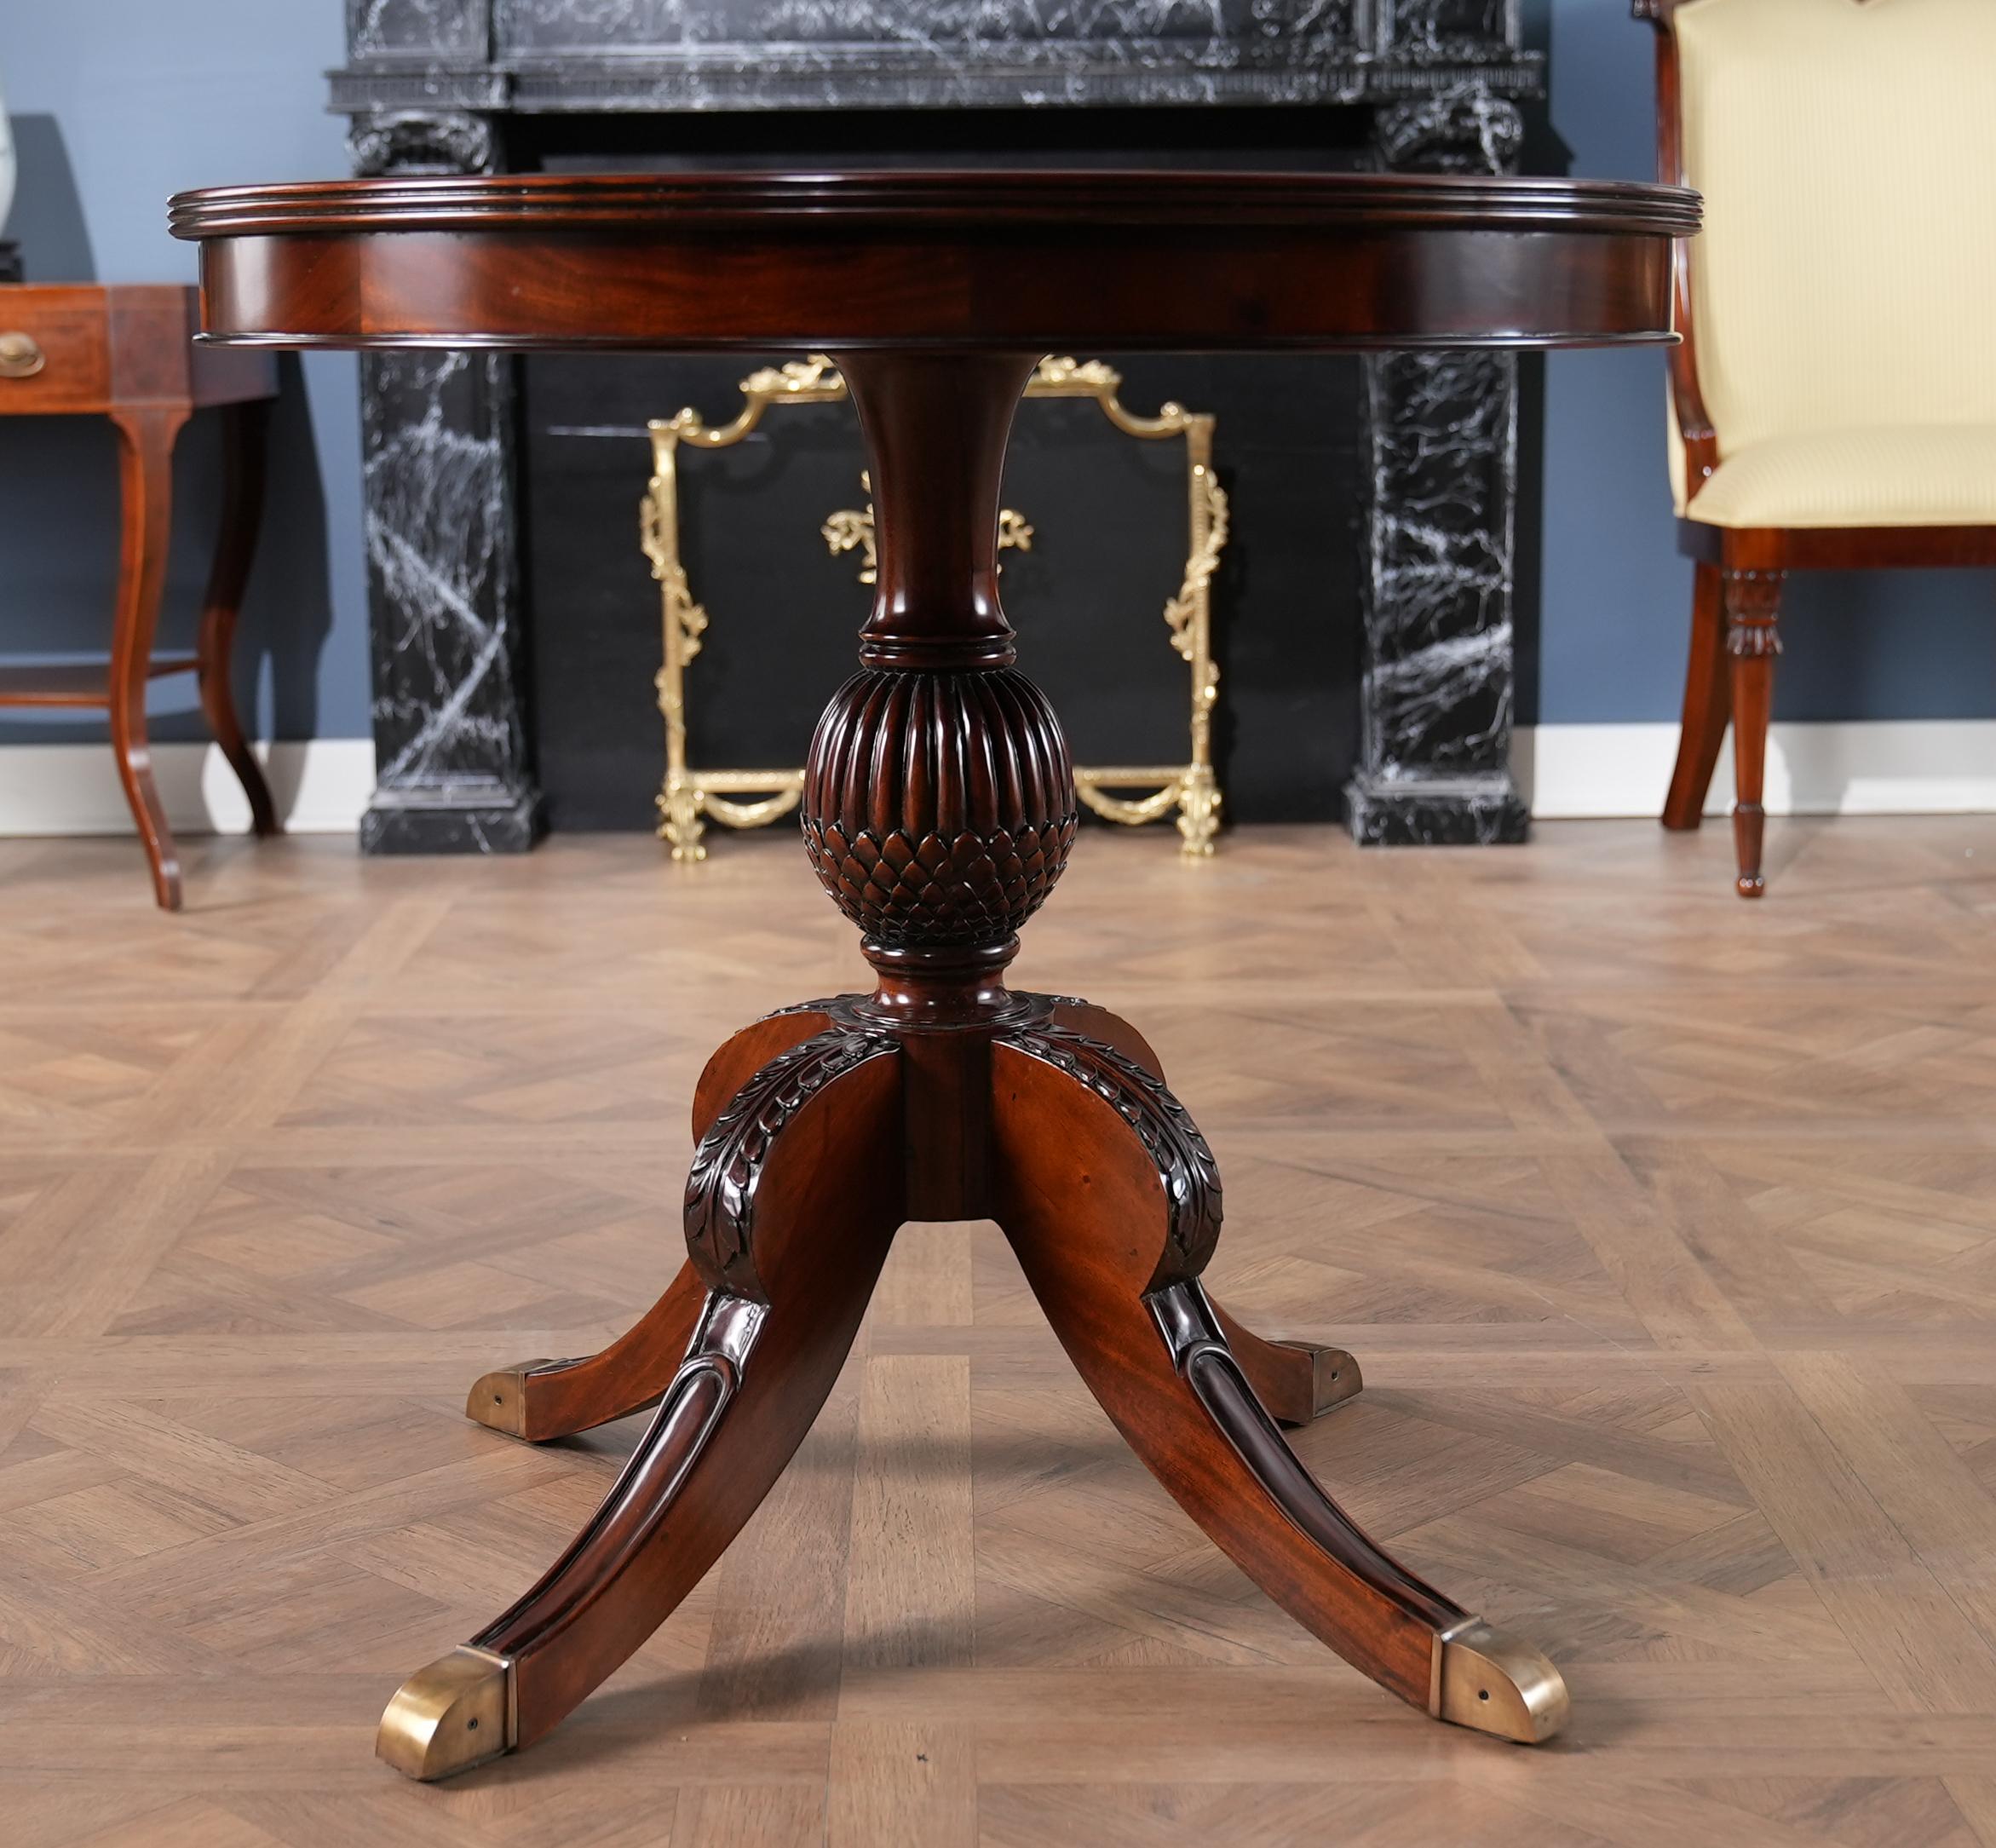 Der elegante und raffinierte runde Mahagoni-Ananastisch von Niagara Furniture verfügt über einen fantastischen Sockel, der die Form einer Ananas hat, sowie über eine schöne Mahagoni-Sockelplatte mit einem Rand aus satiniertem Holz. Die Tischplatte